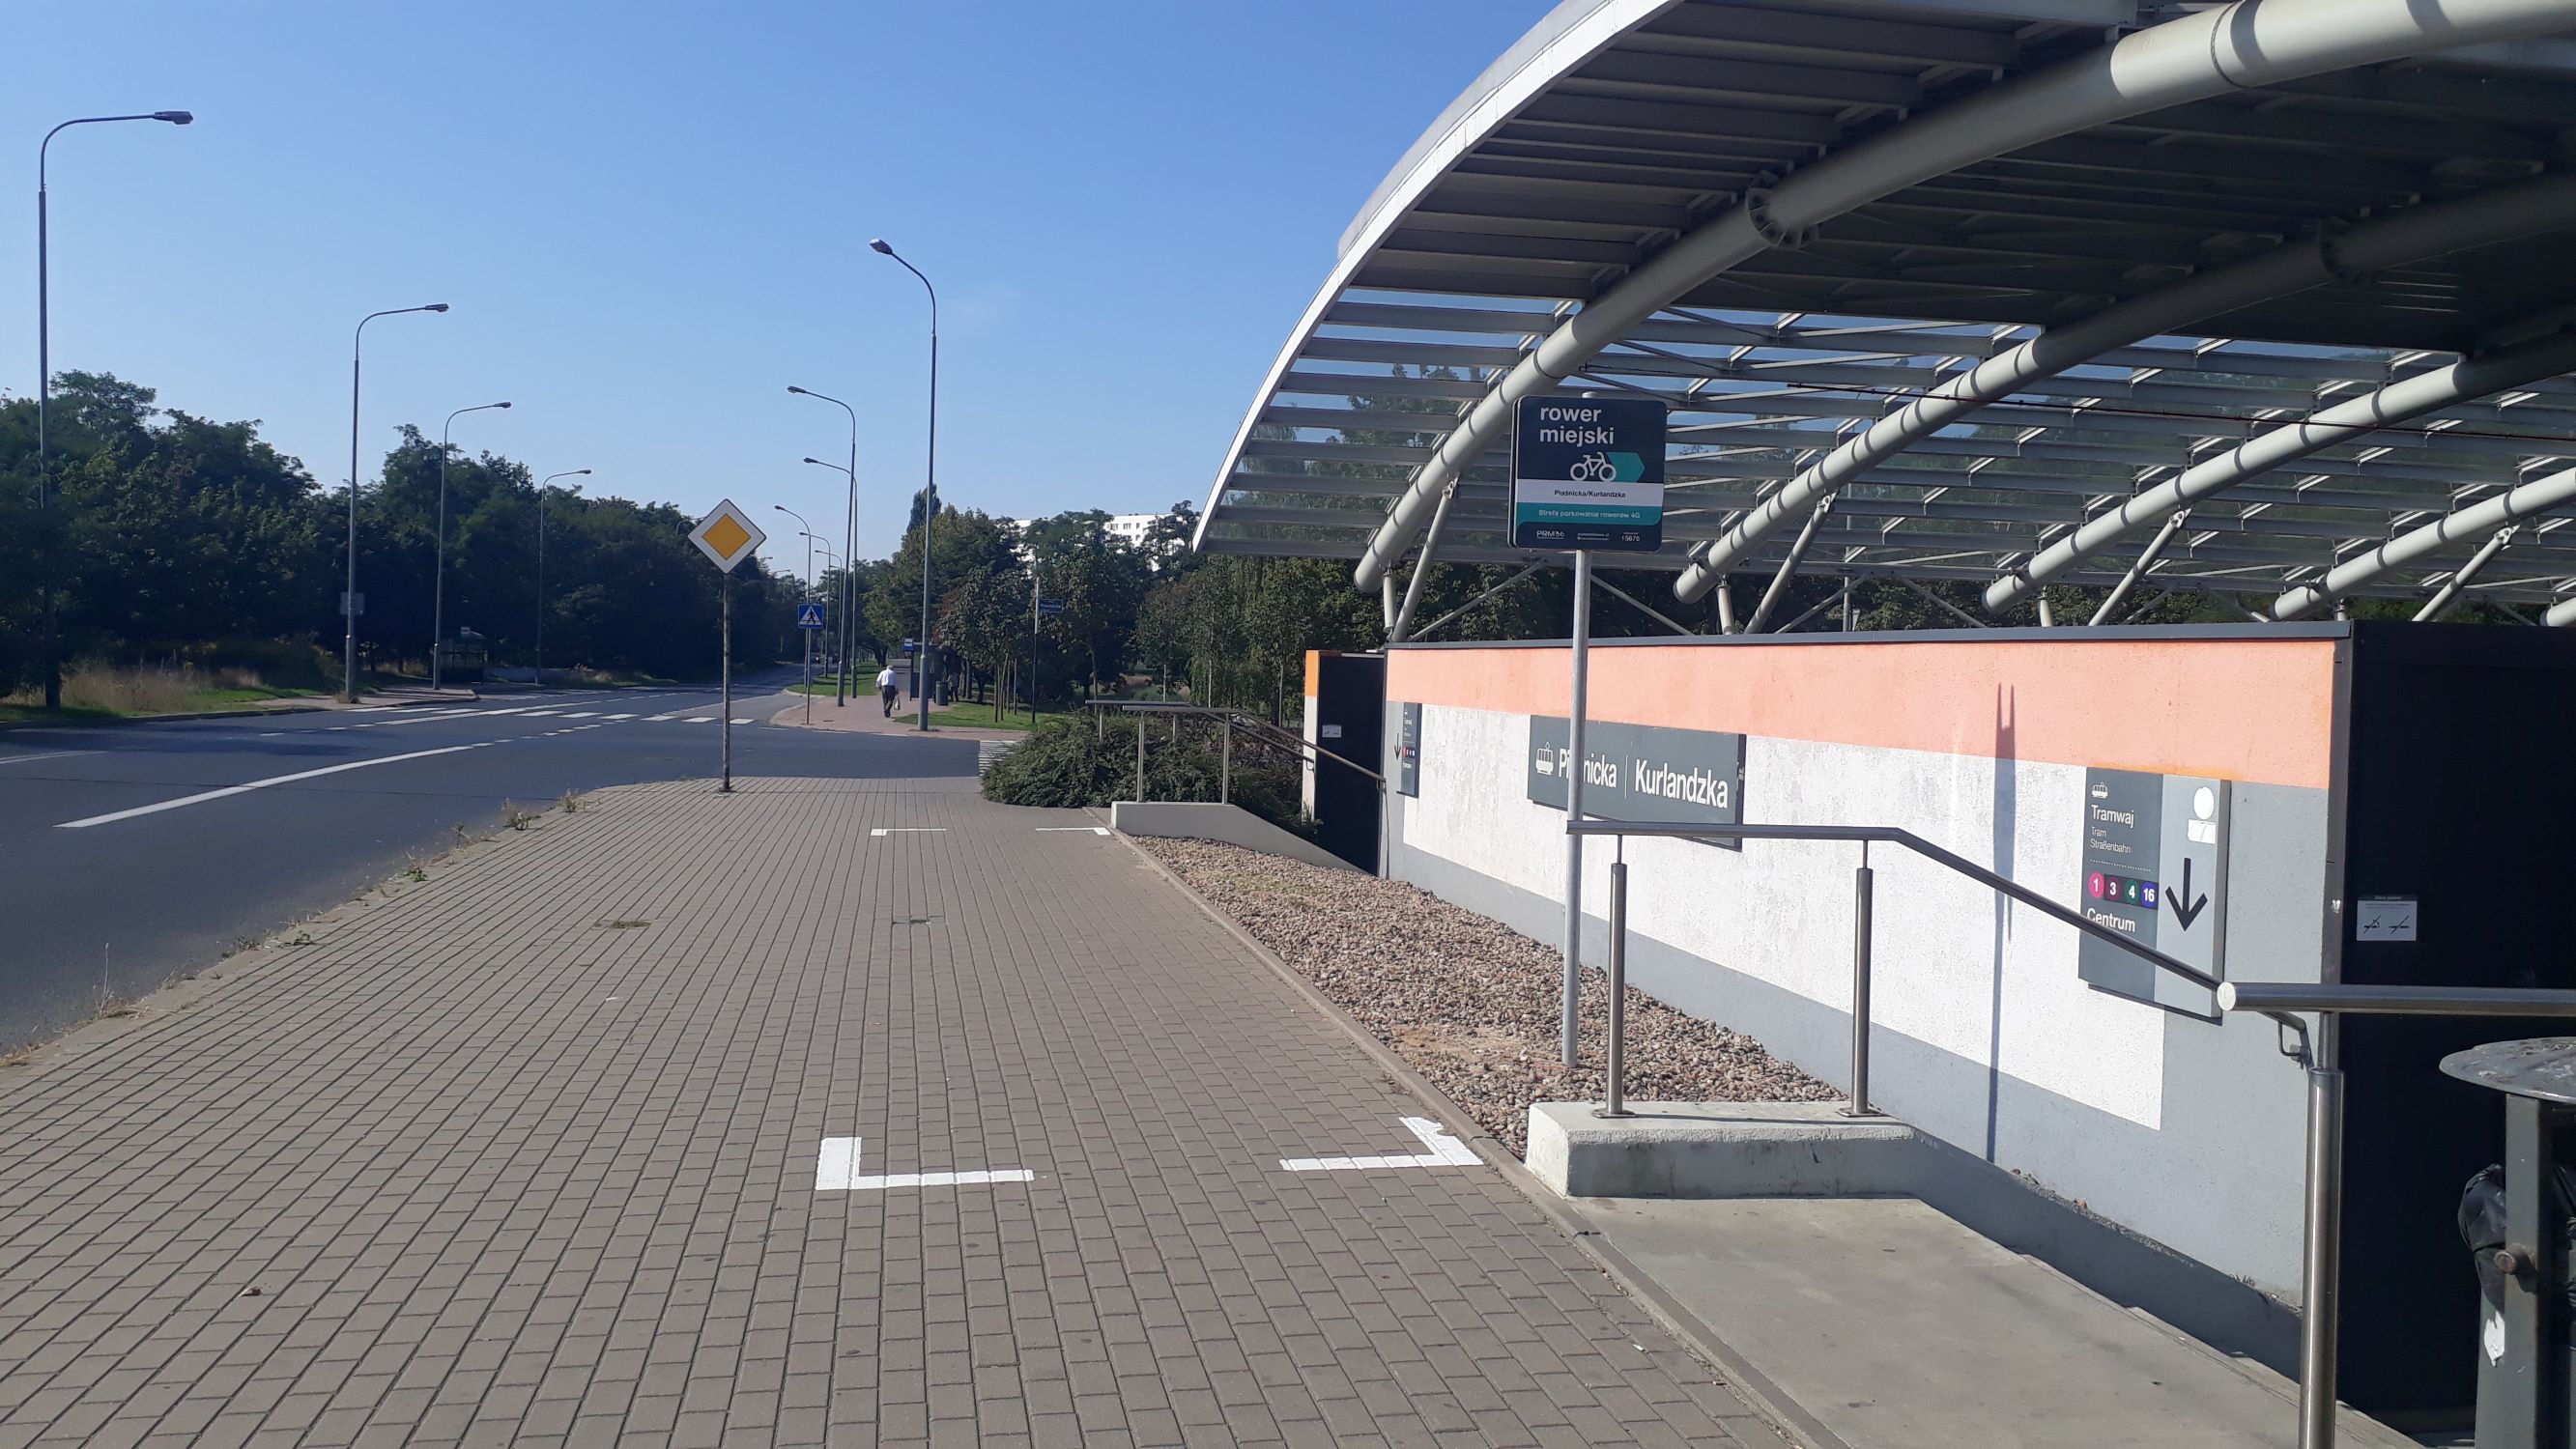 Poznański Rower Miejski – 16 nowych lokalizacji stref 4G